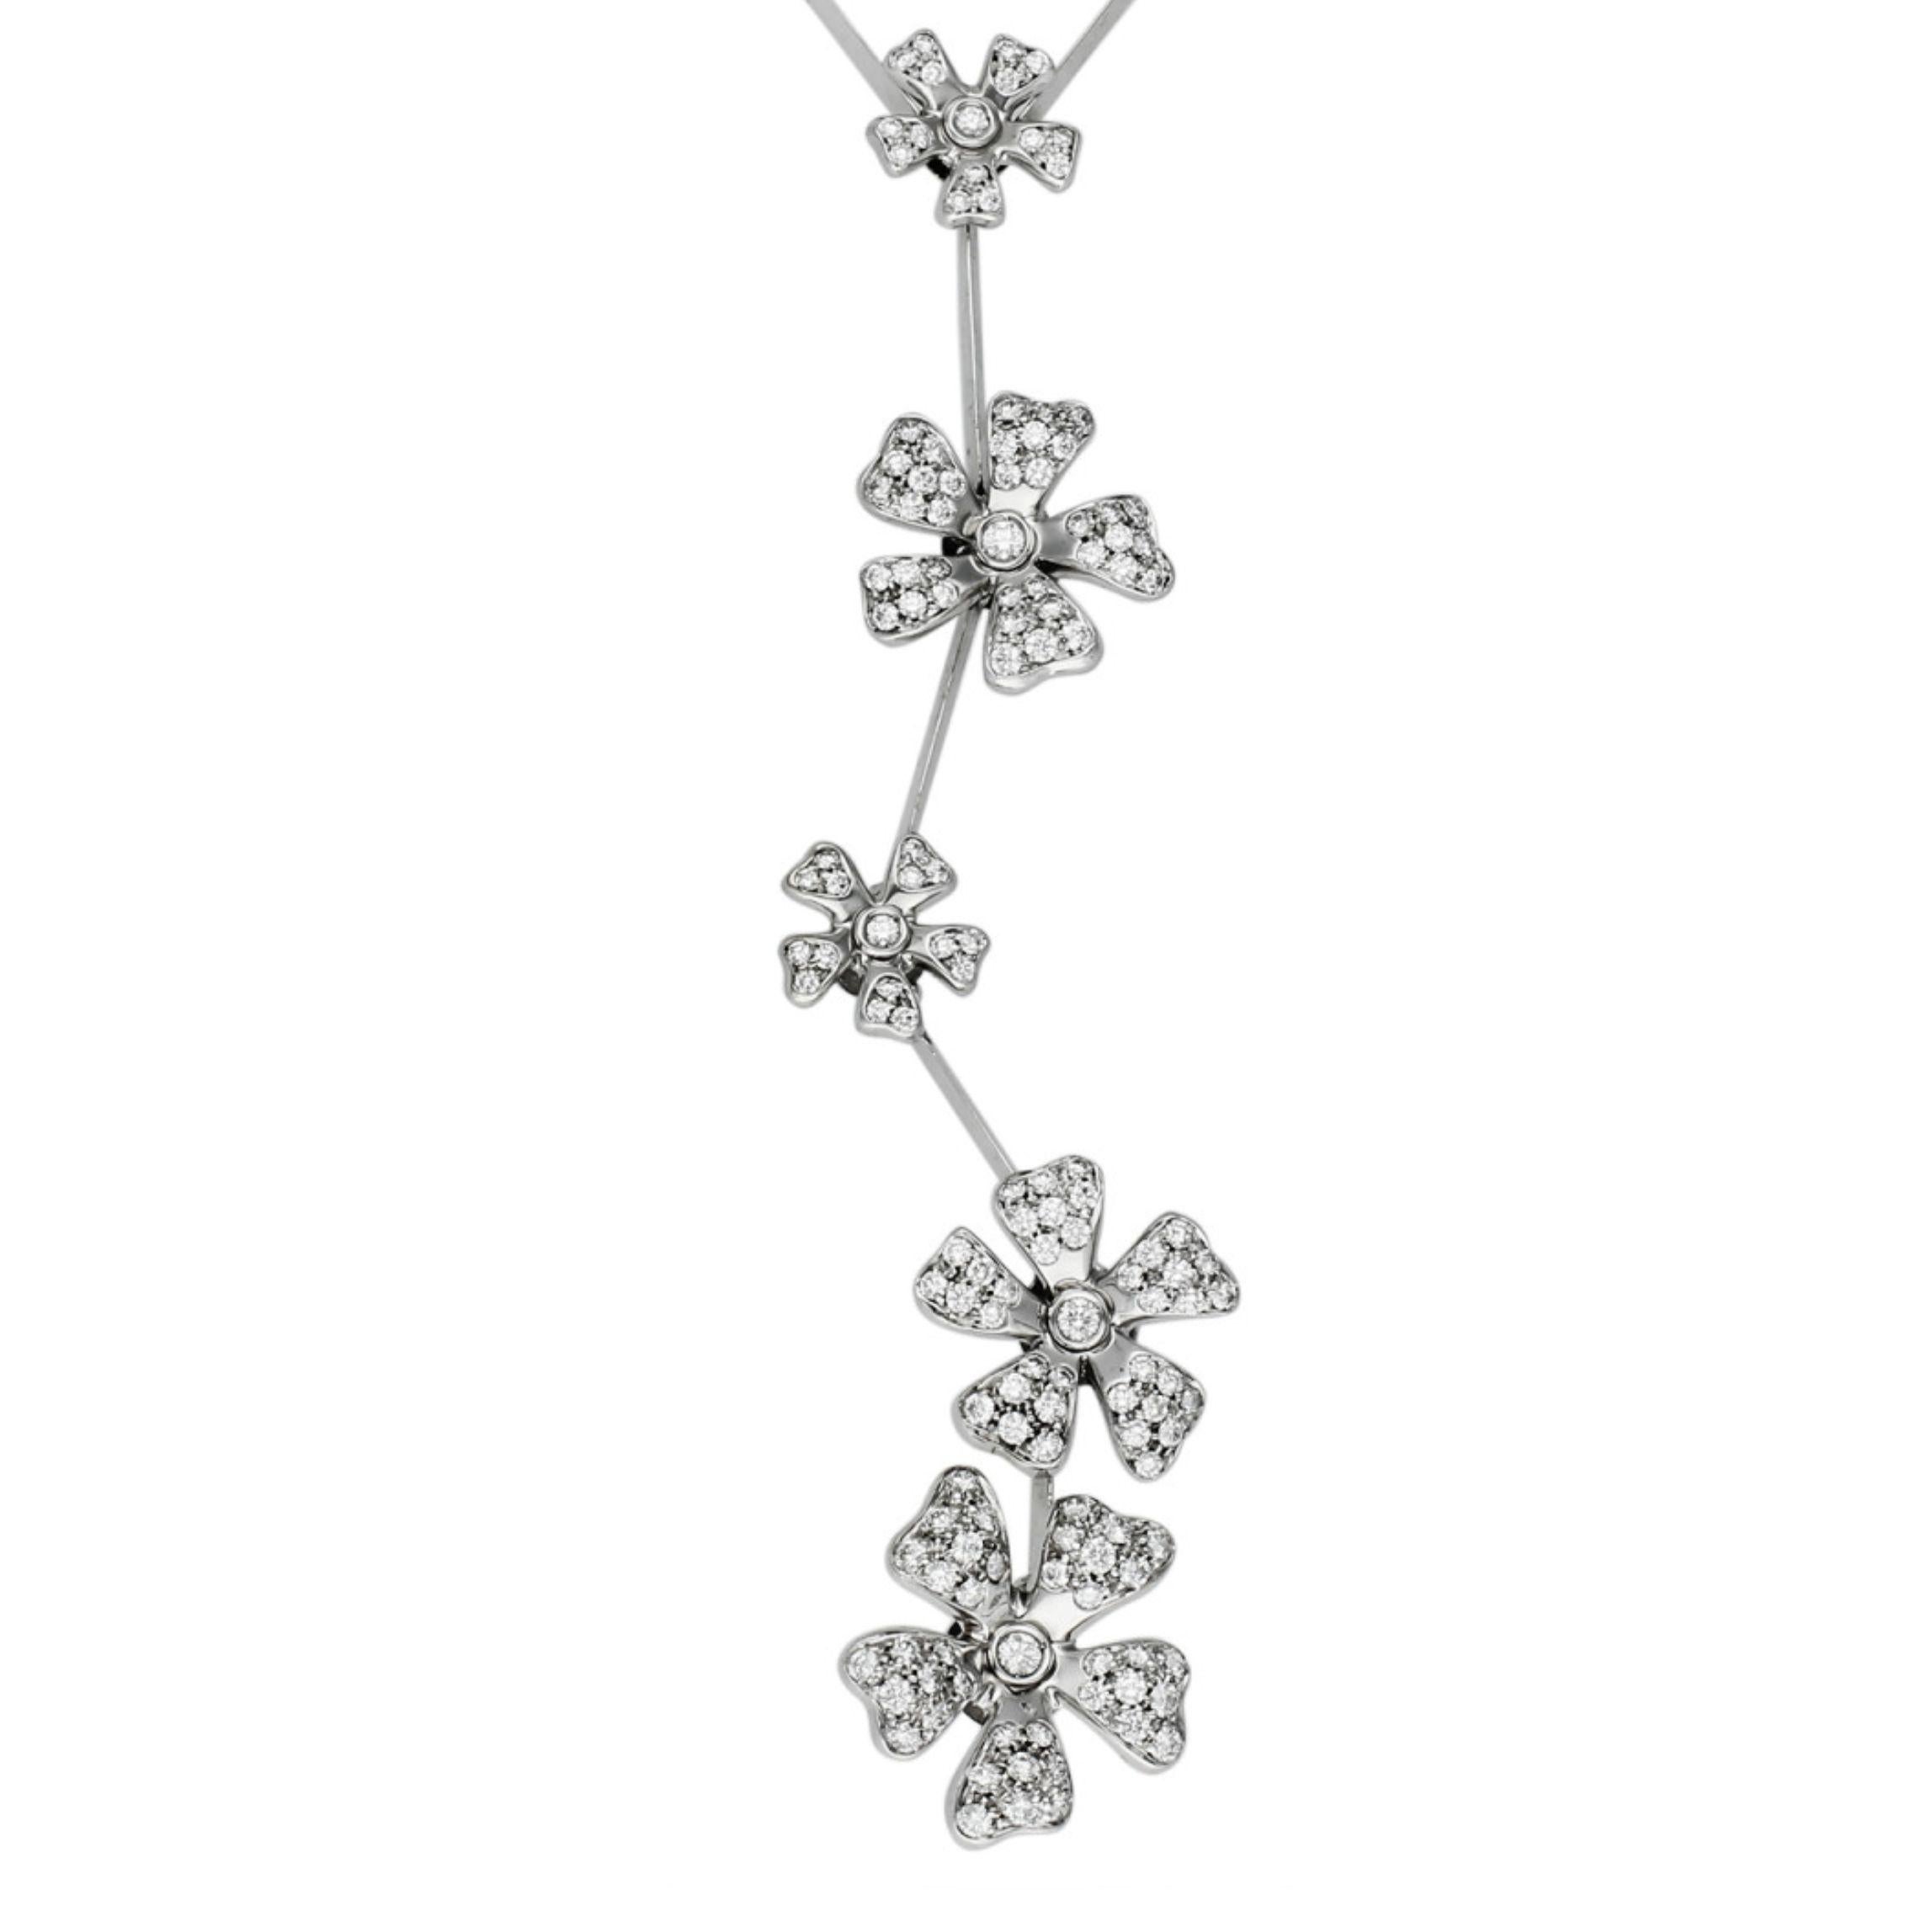 De Beers Wild Flower Necklace 2.10ct Diamond and 18ct White Gold (Collier fleur sauvage De Beers 2.10ct Diamond et or blanc 18ct)

Ce collier de fleurs sauvages De Beers est une pièce exquise à l'allure enchanteresse. Une symphonie de luxe et de